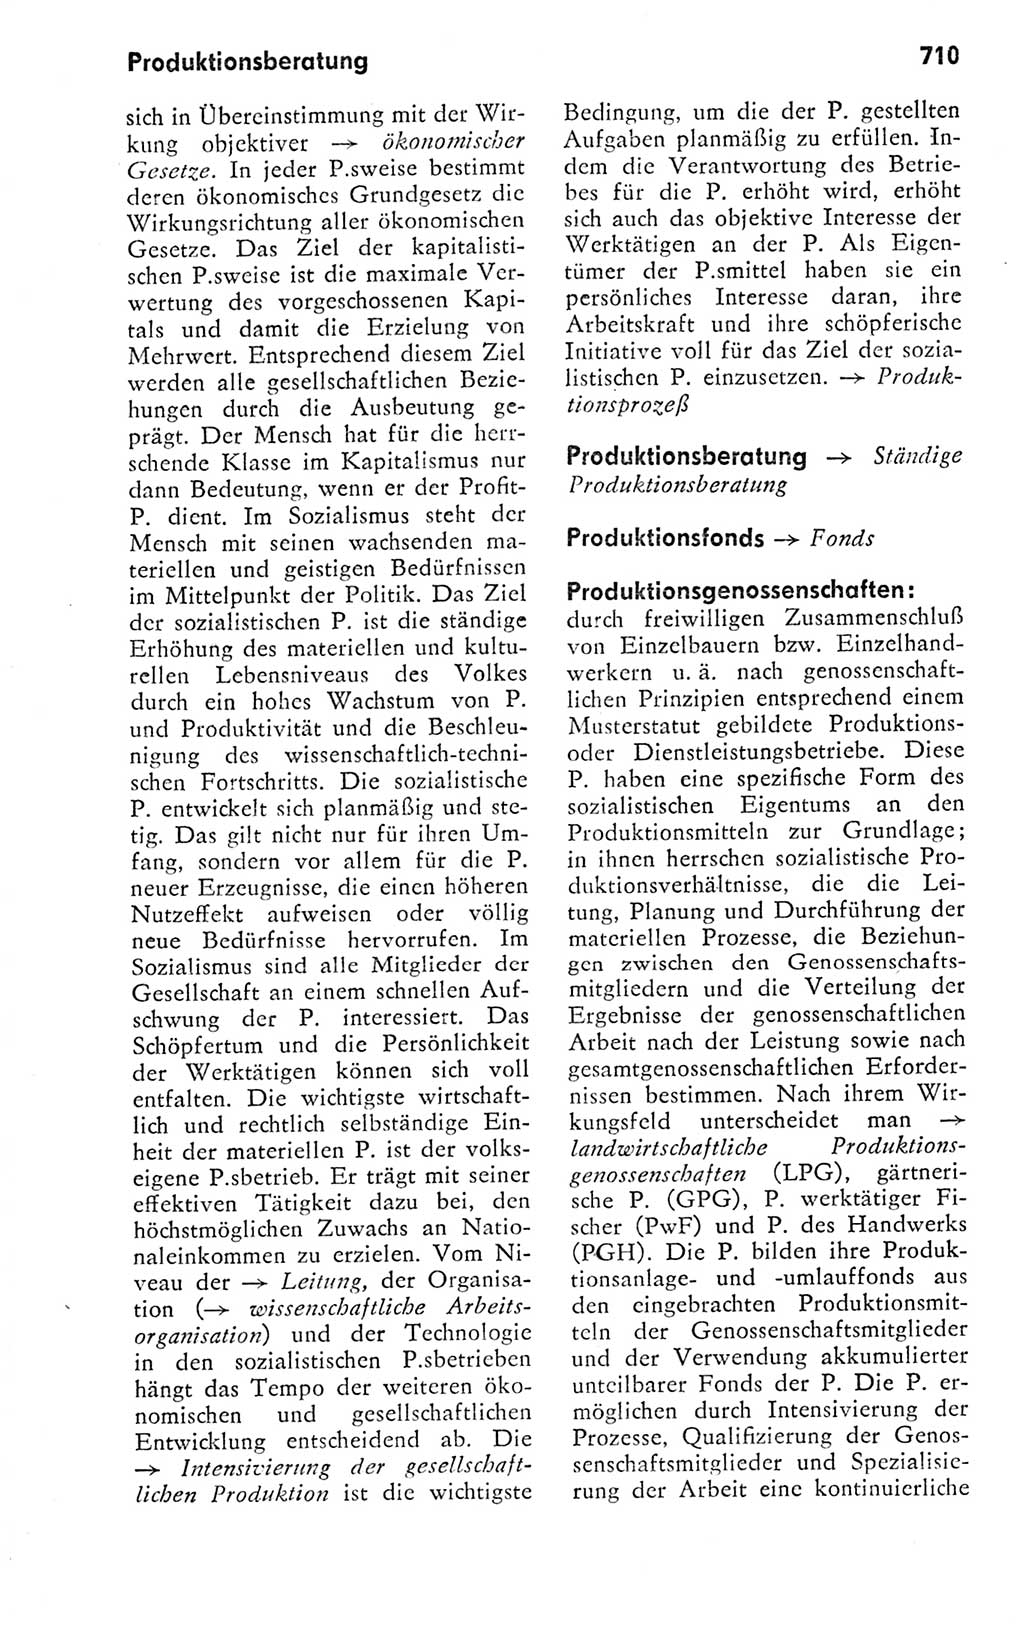 Kleines politisches Wörterbuch [Deutsche Demokratische Republik (DDR)] 1978, Seite 710 (Kl. pol. Wb. DDR 1978, S. 710)